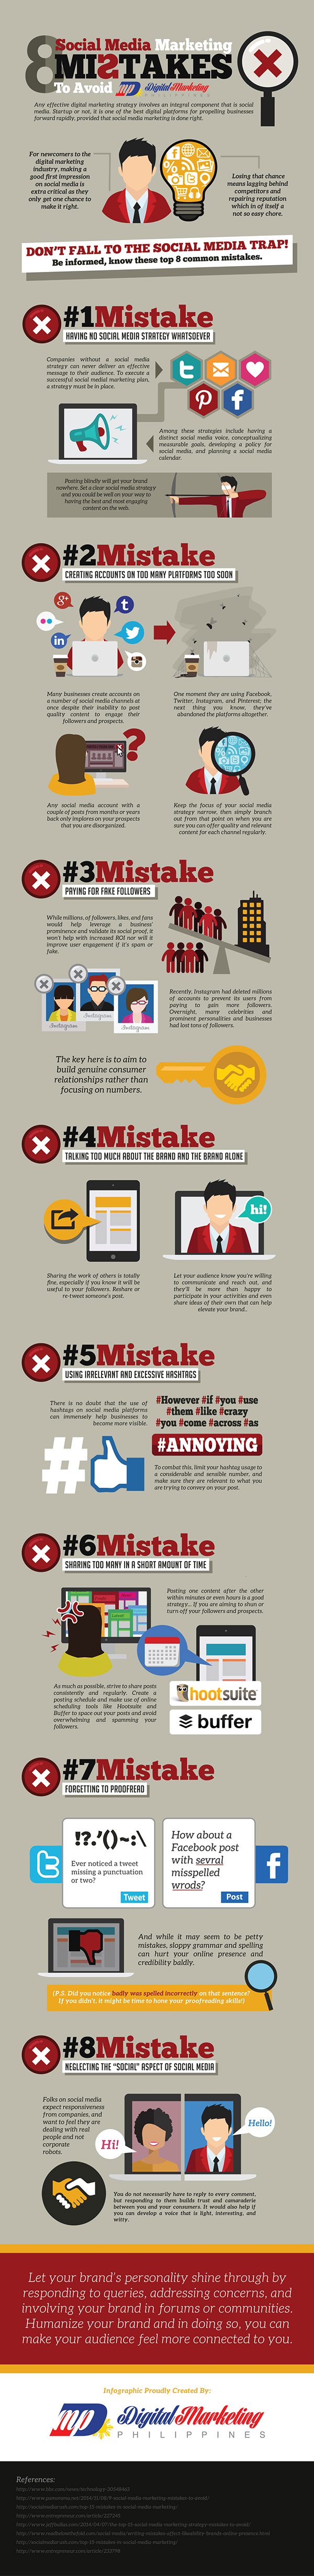 8 Social Media Marketing Mistakes to Avoid (Infographic) - An Infographic from Digital Marketing Philippines